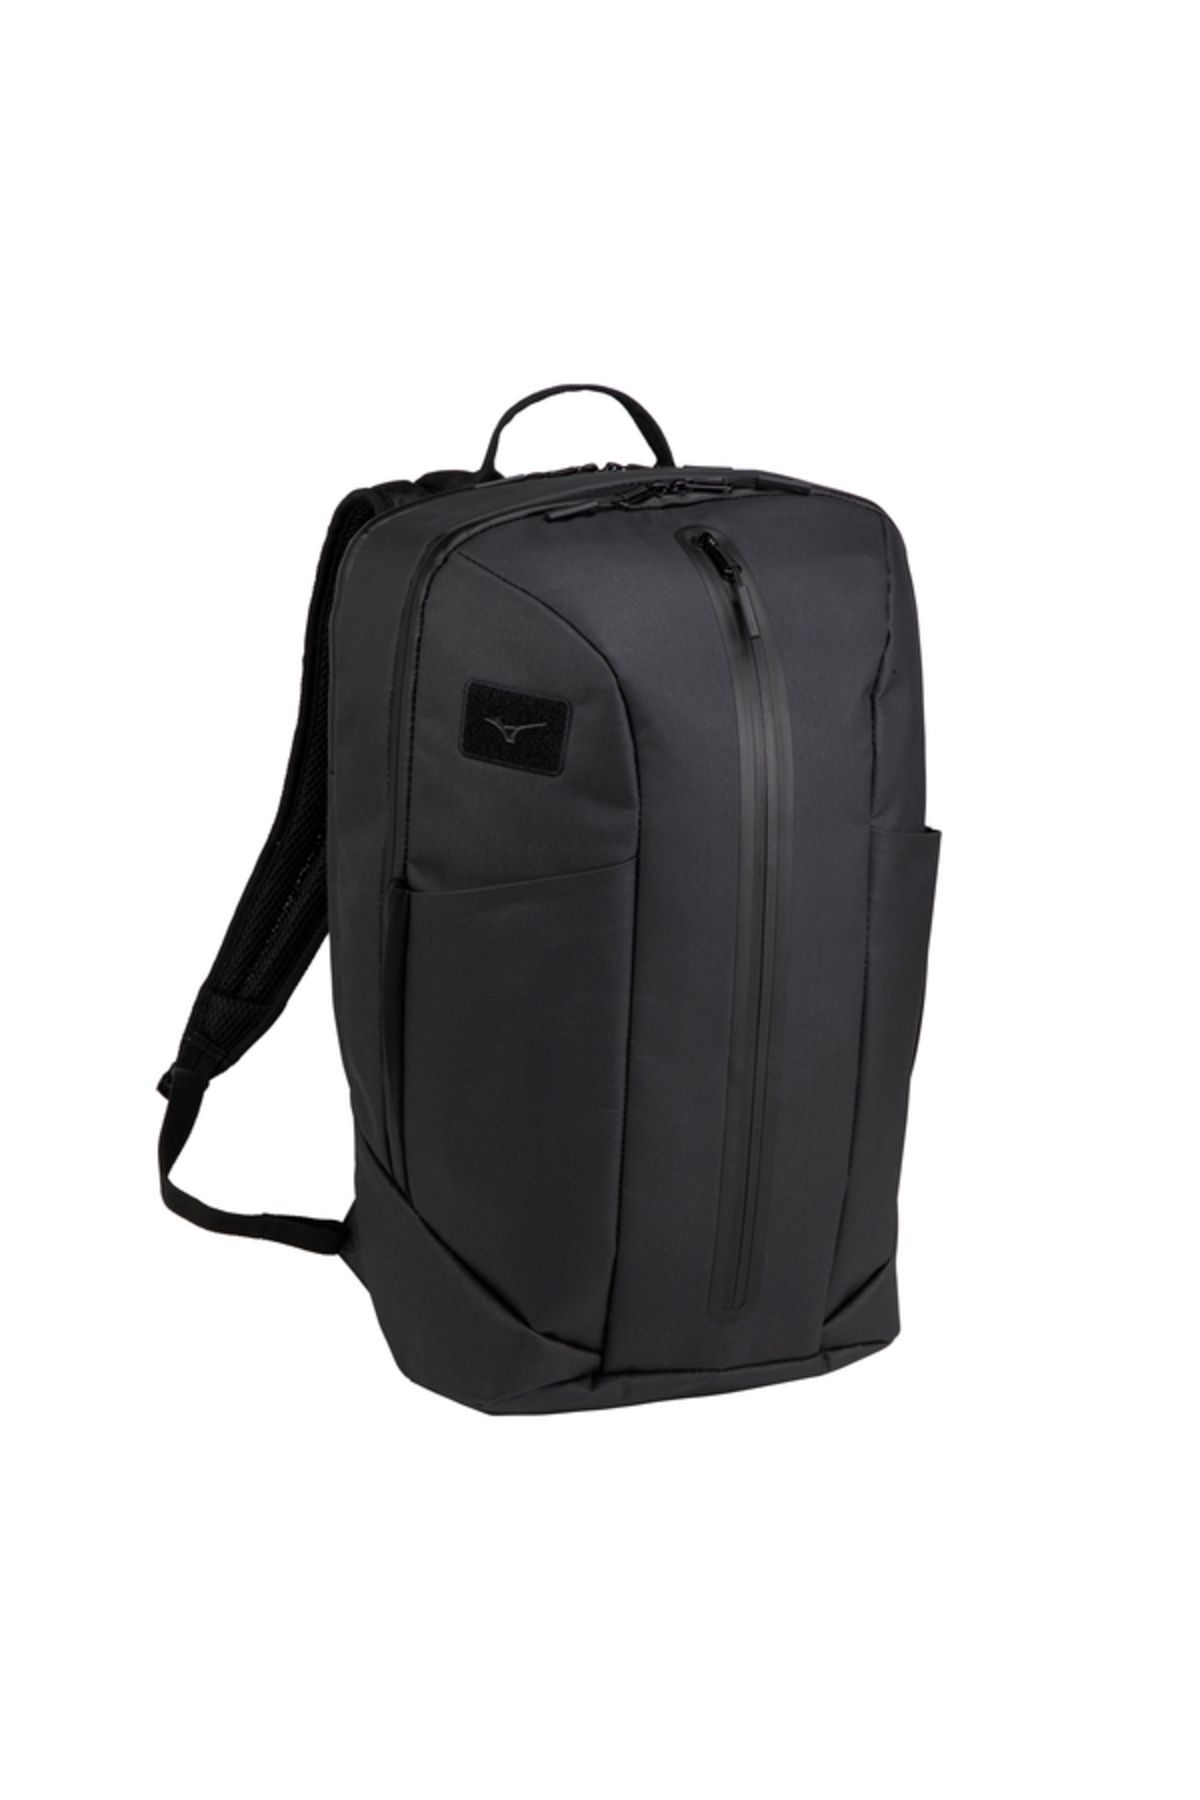 Mizuno Backpack 25 WP Unisex Sırt Çantası Siyah 33GDB00009